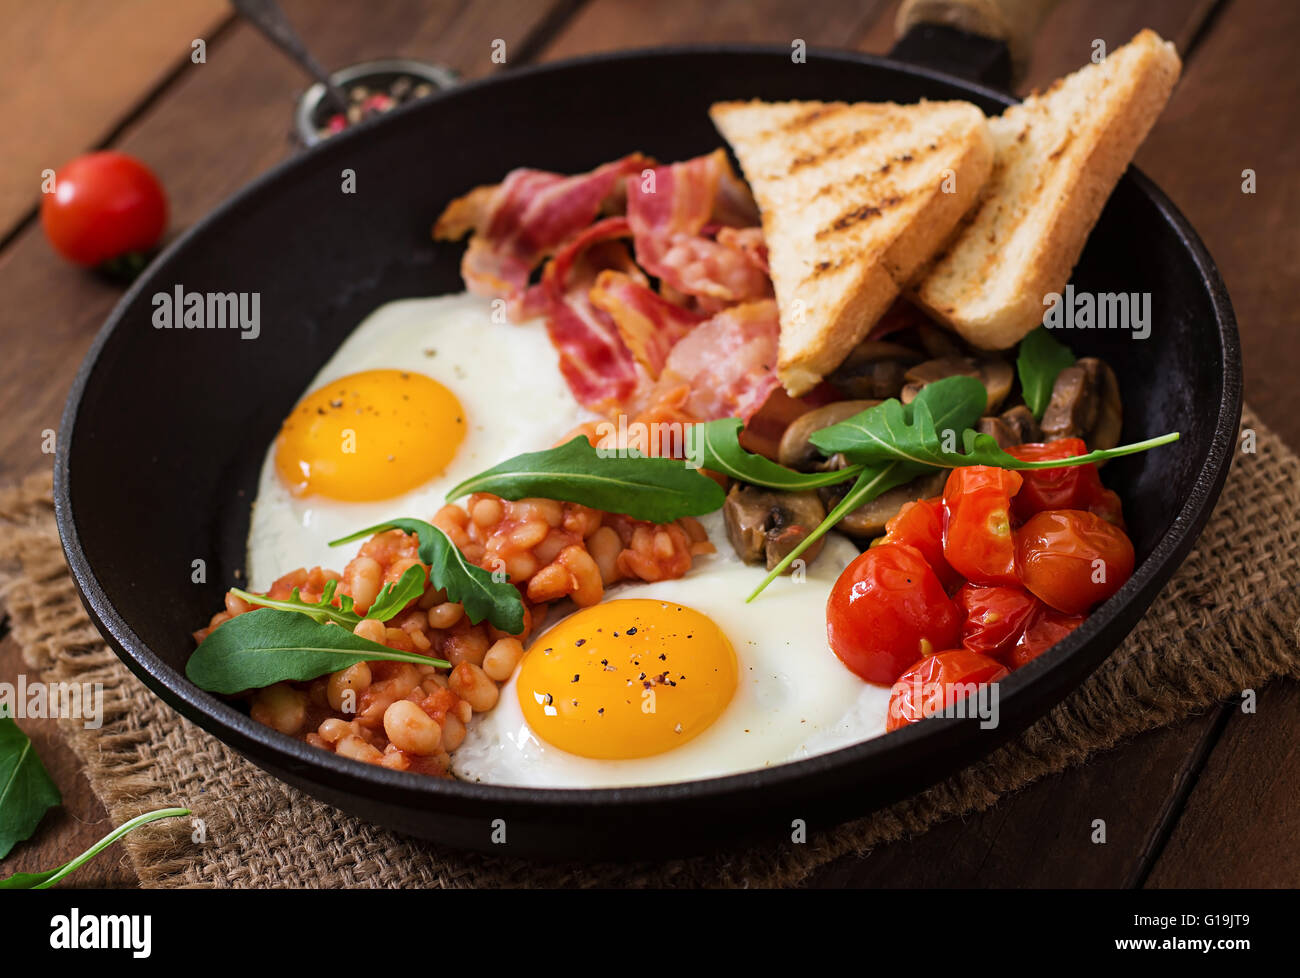 Desayuno inglés, huevo frito, frijoles, tomates, champiñones, tocino y pan tostado Foto de stock